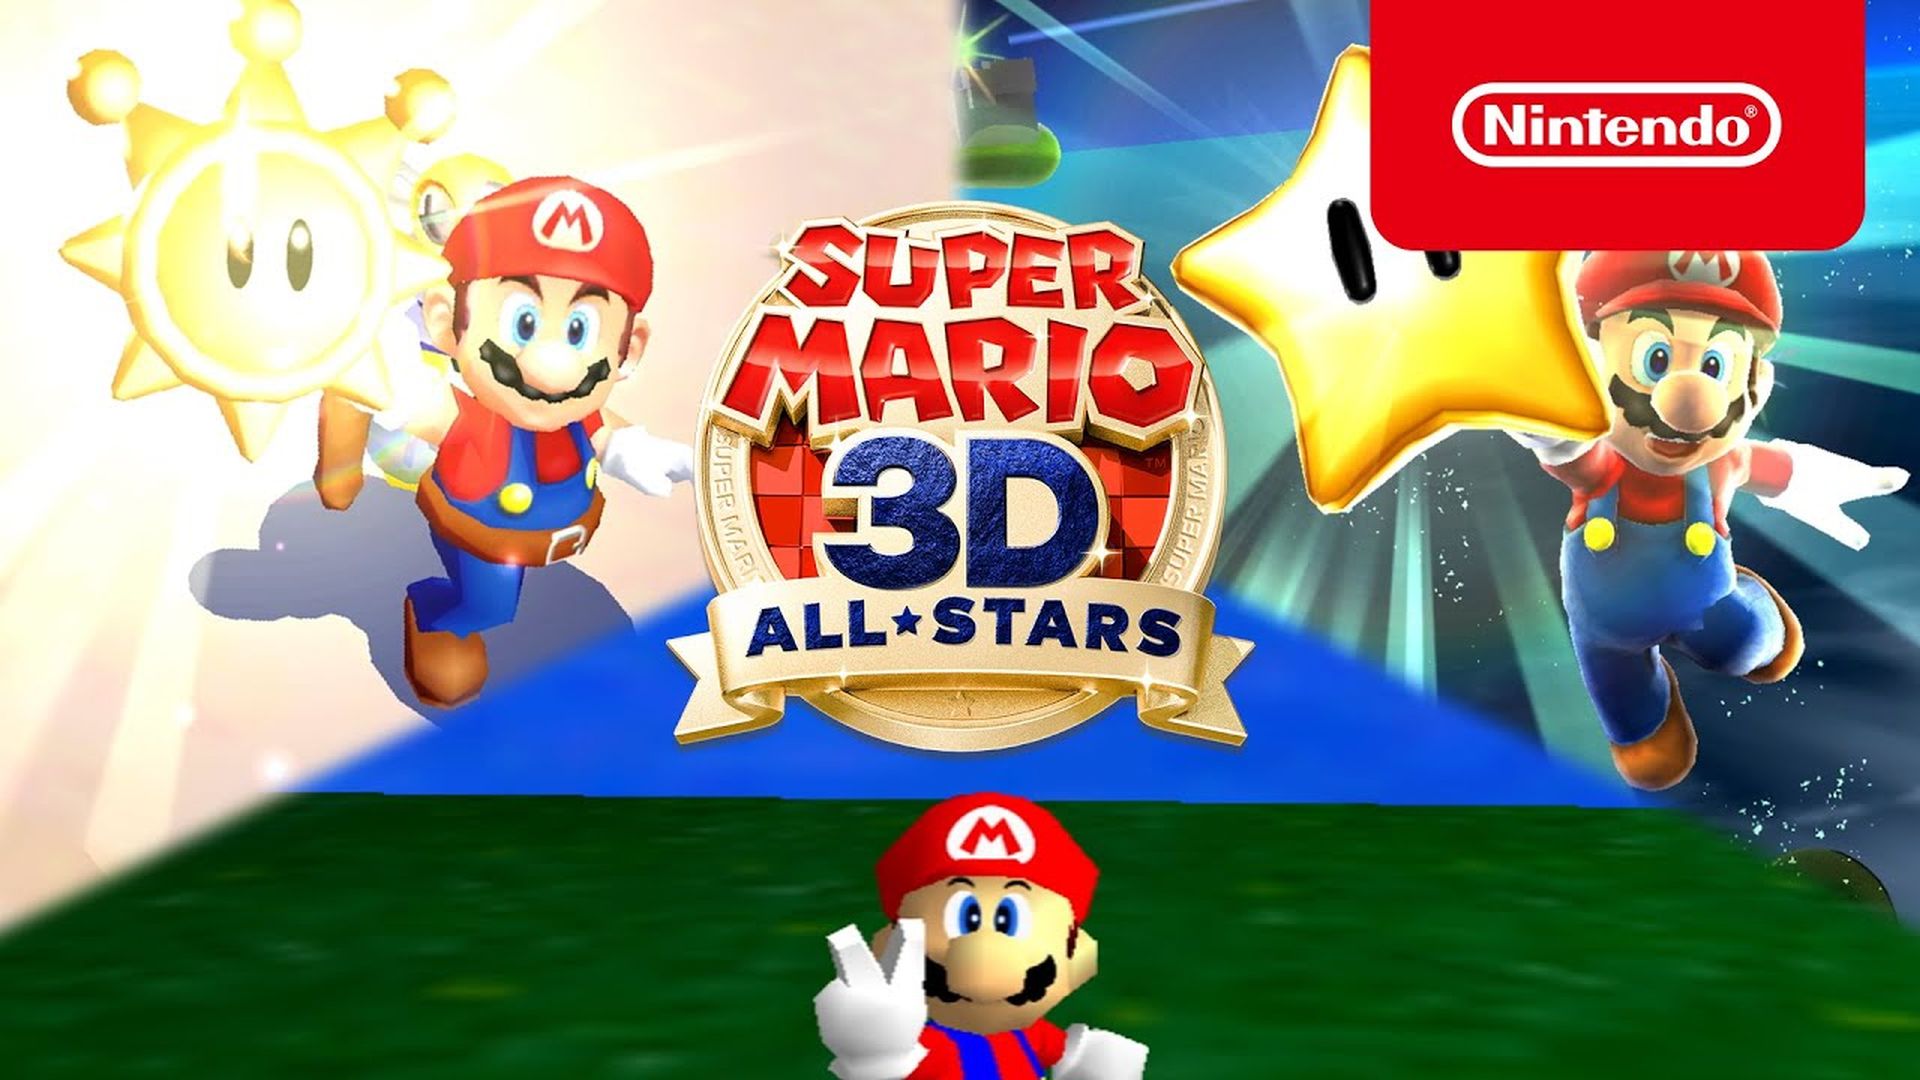 Ang Nintendo Naghimo sa Mario All Stars Collection Time Limitado Mao ang Anti Consumer Ug Transparently Cynical